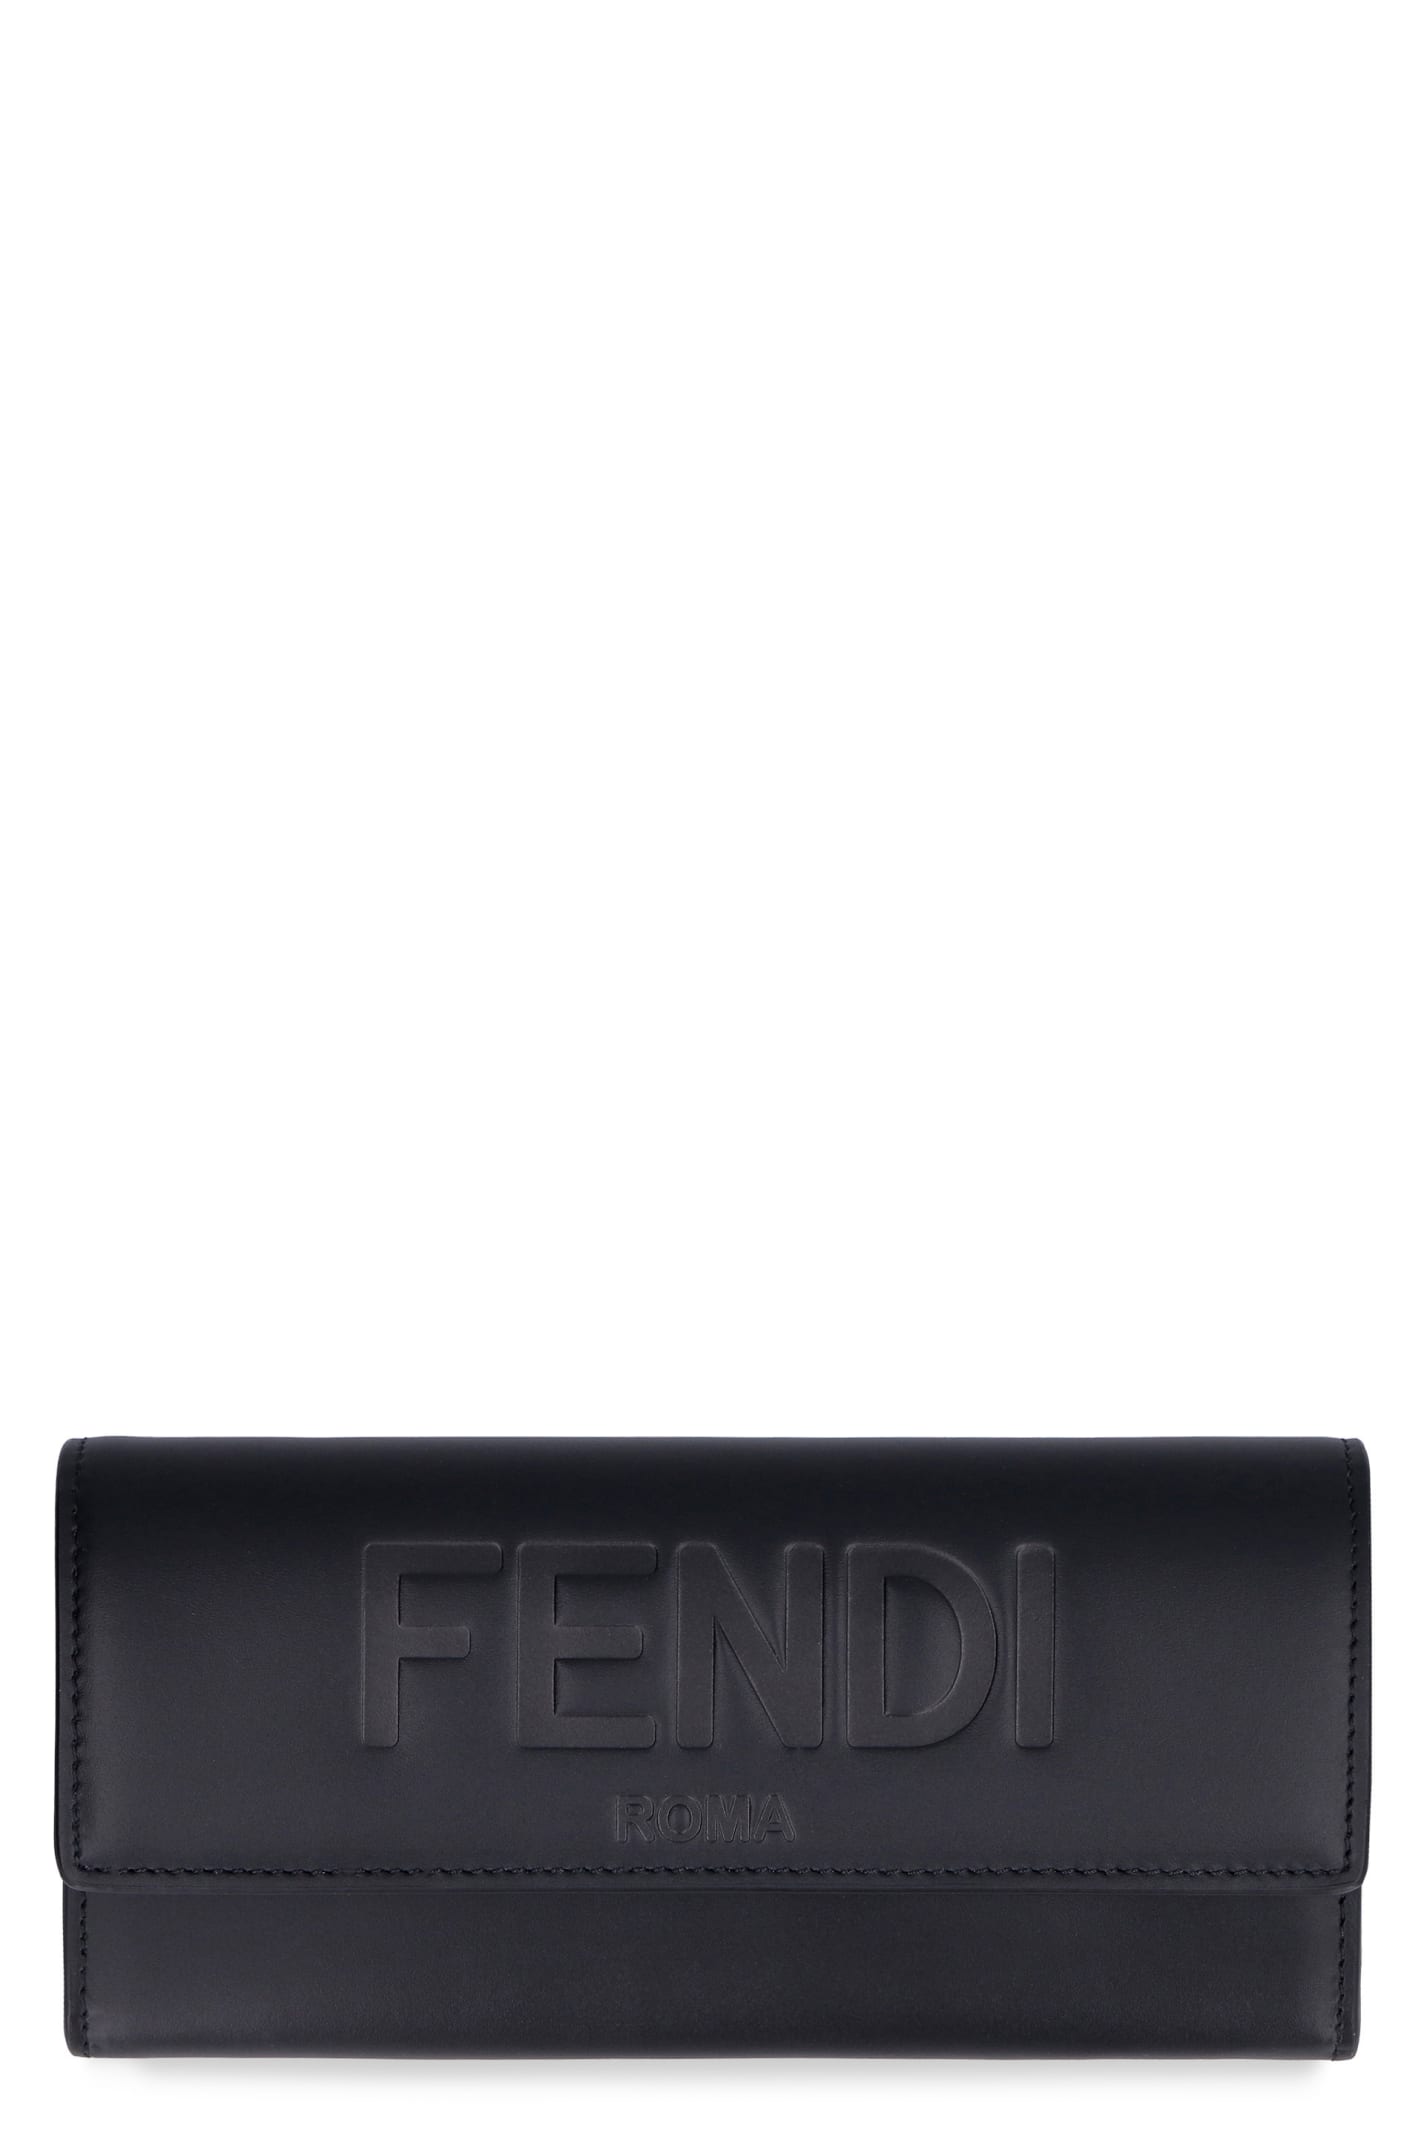 Fendi Leather Wallet